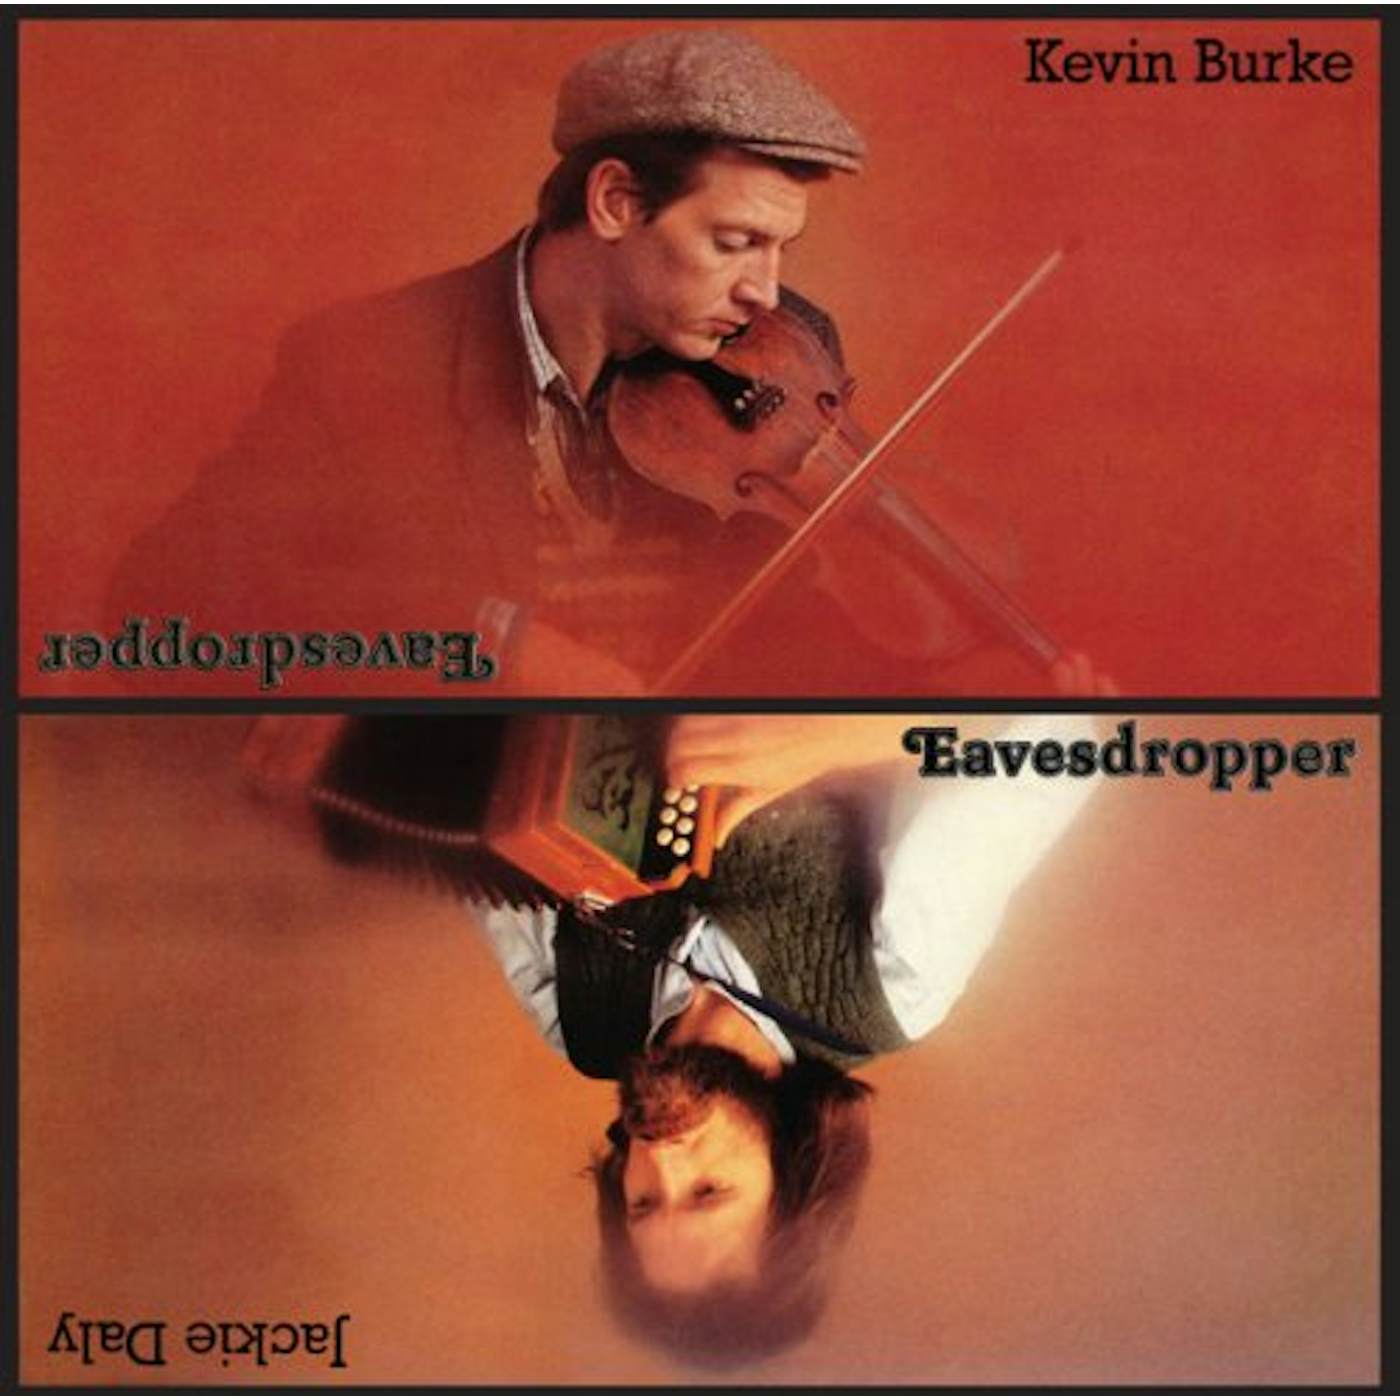 Kevin Burke EAVESDROPPER CD